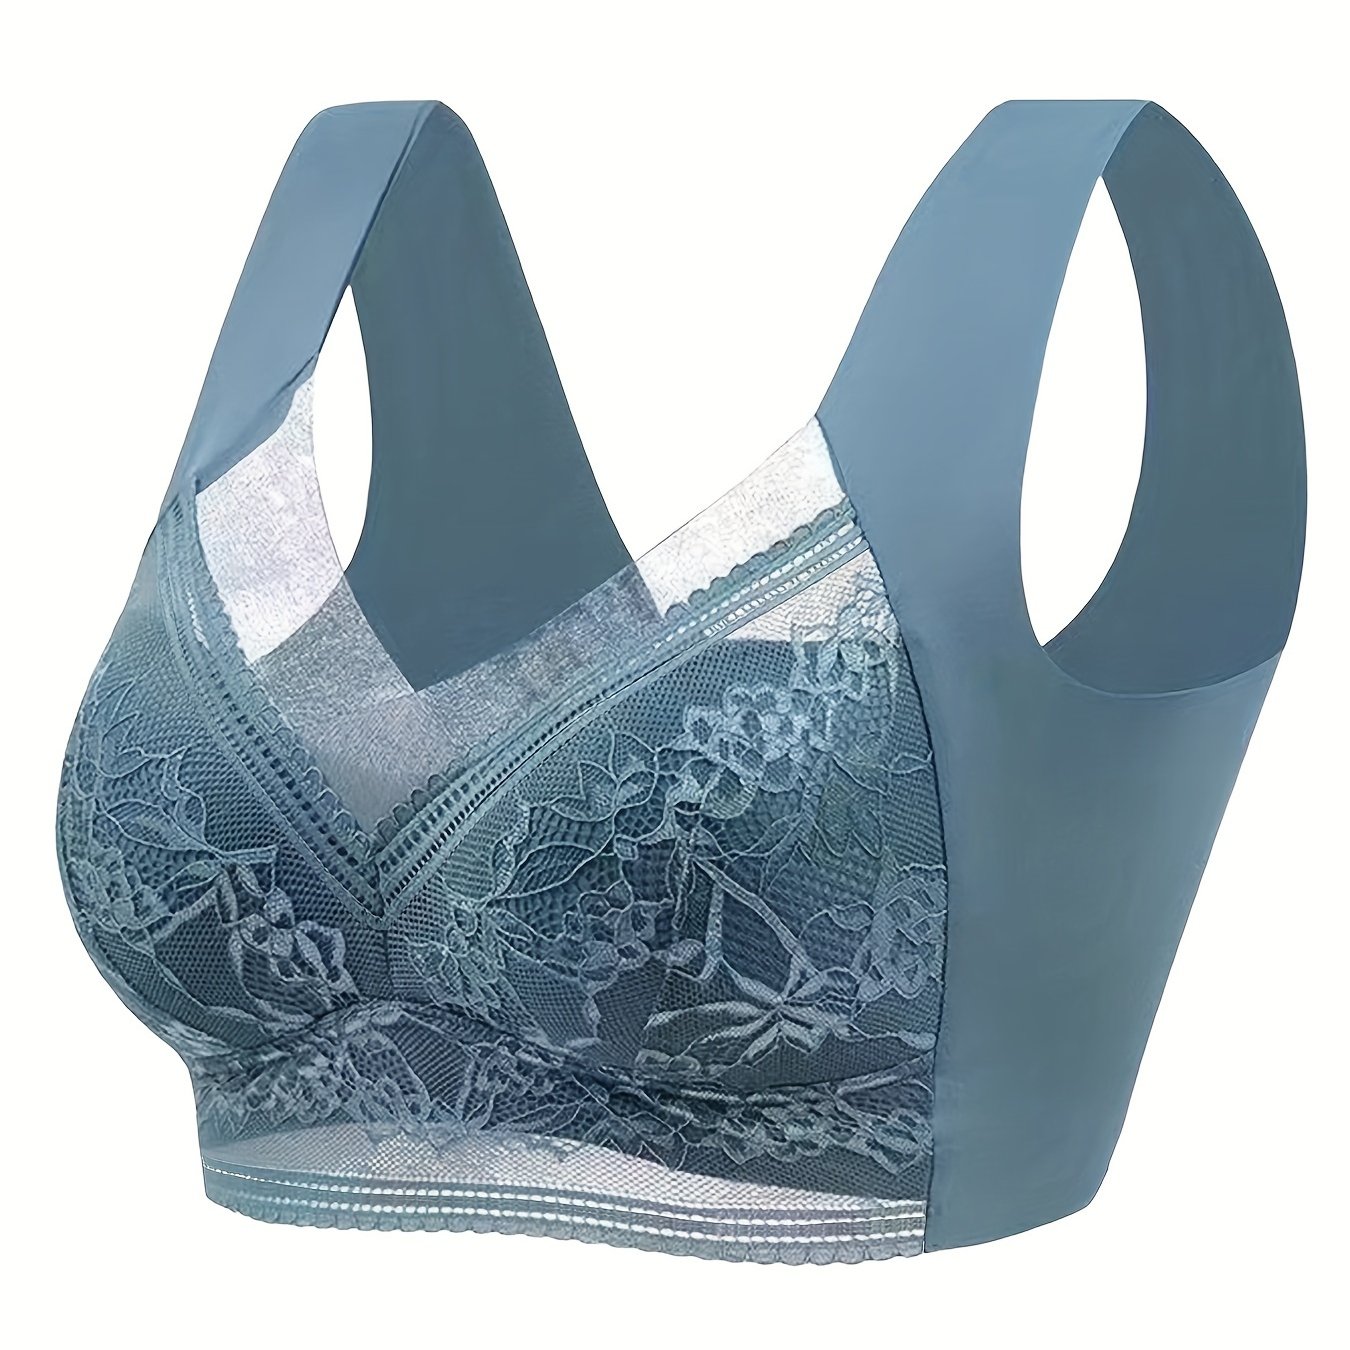 Paramour Women's Tempting Floral Lace Bra - Aqua Blue 42dd : Target